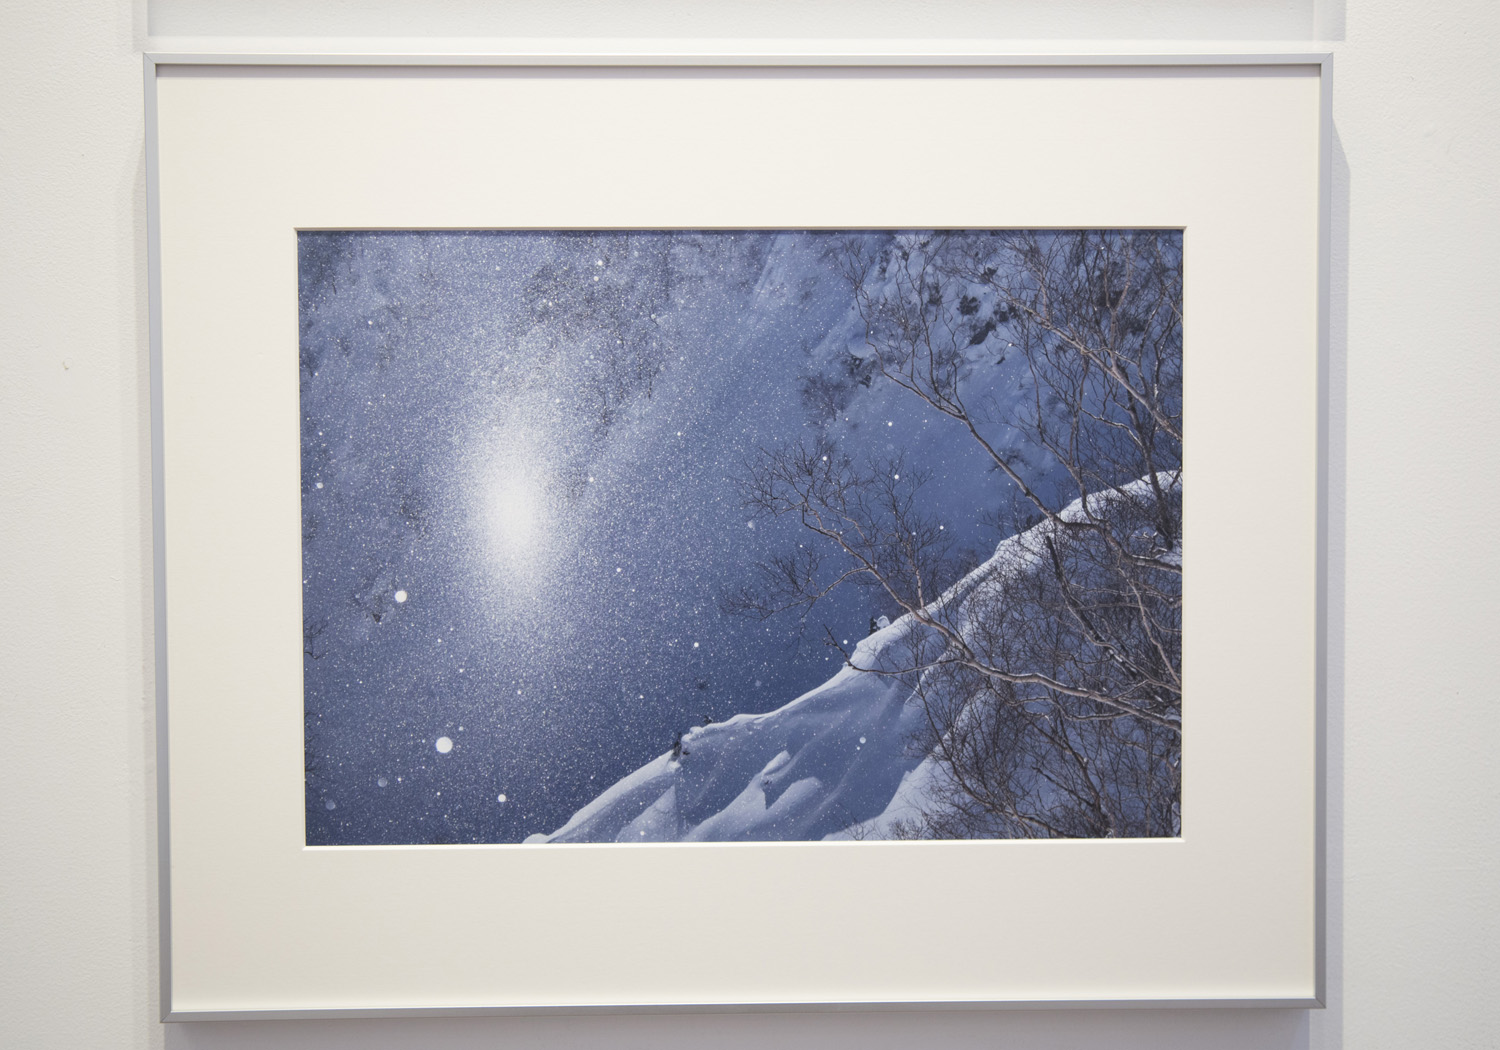 你可以感受到遠藤功先生的照片的溫暖和善意。雪山的日常出現也通過給他拍照來表達為藝術。